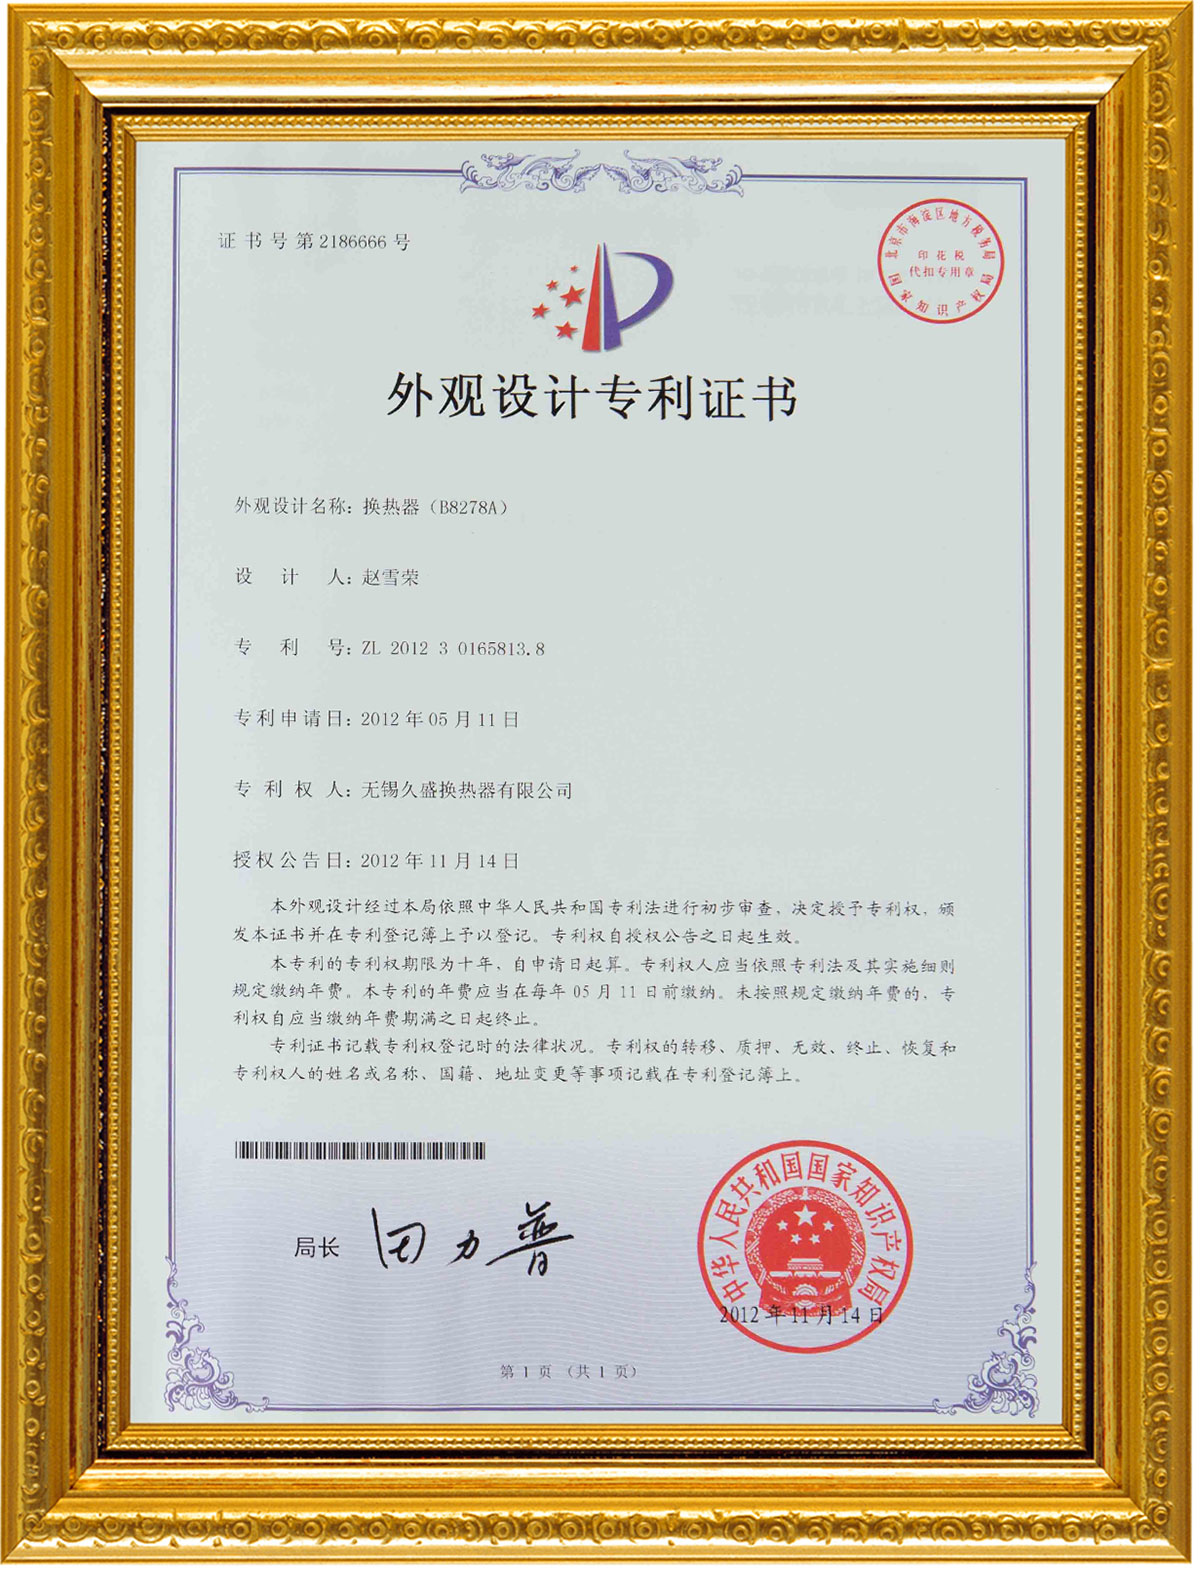 certificate9zp0